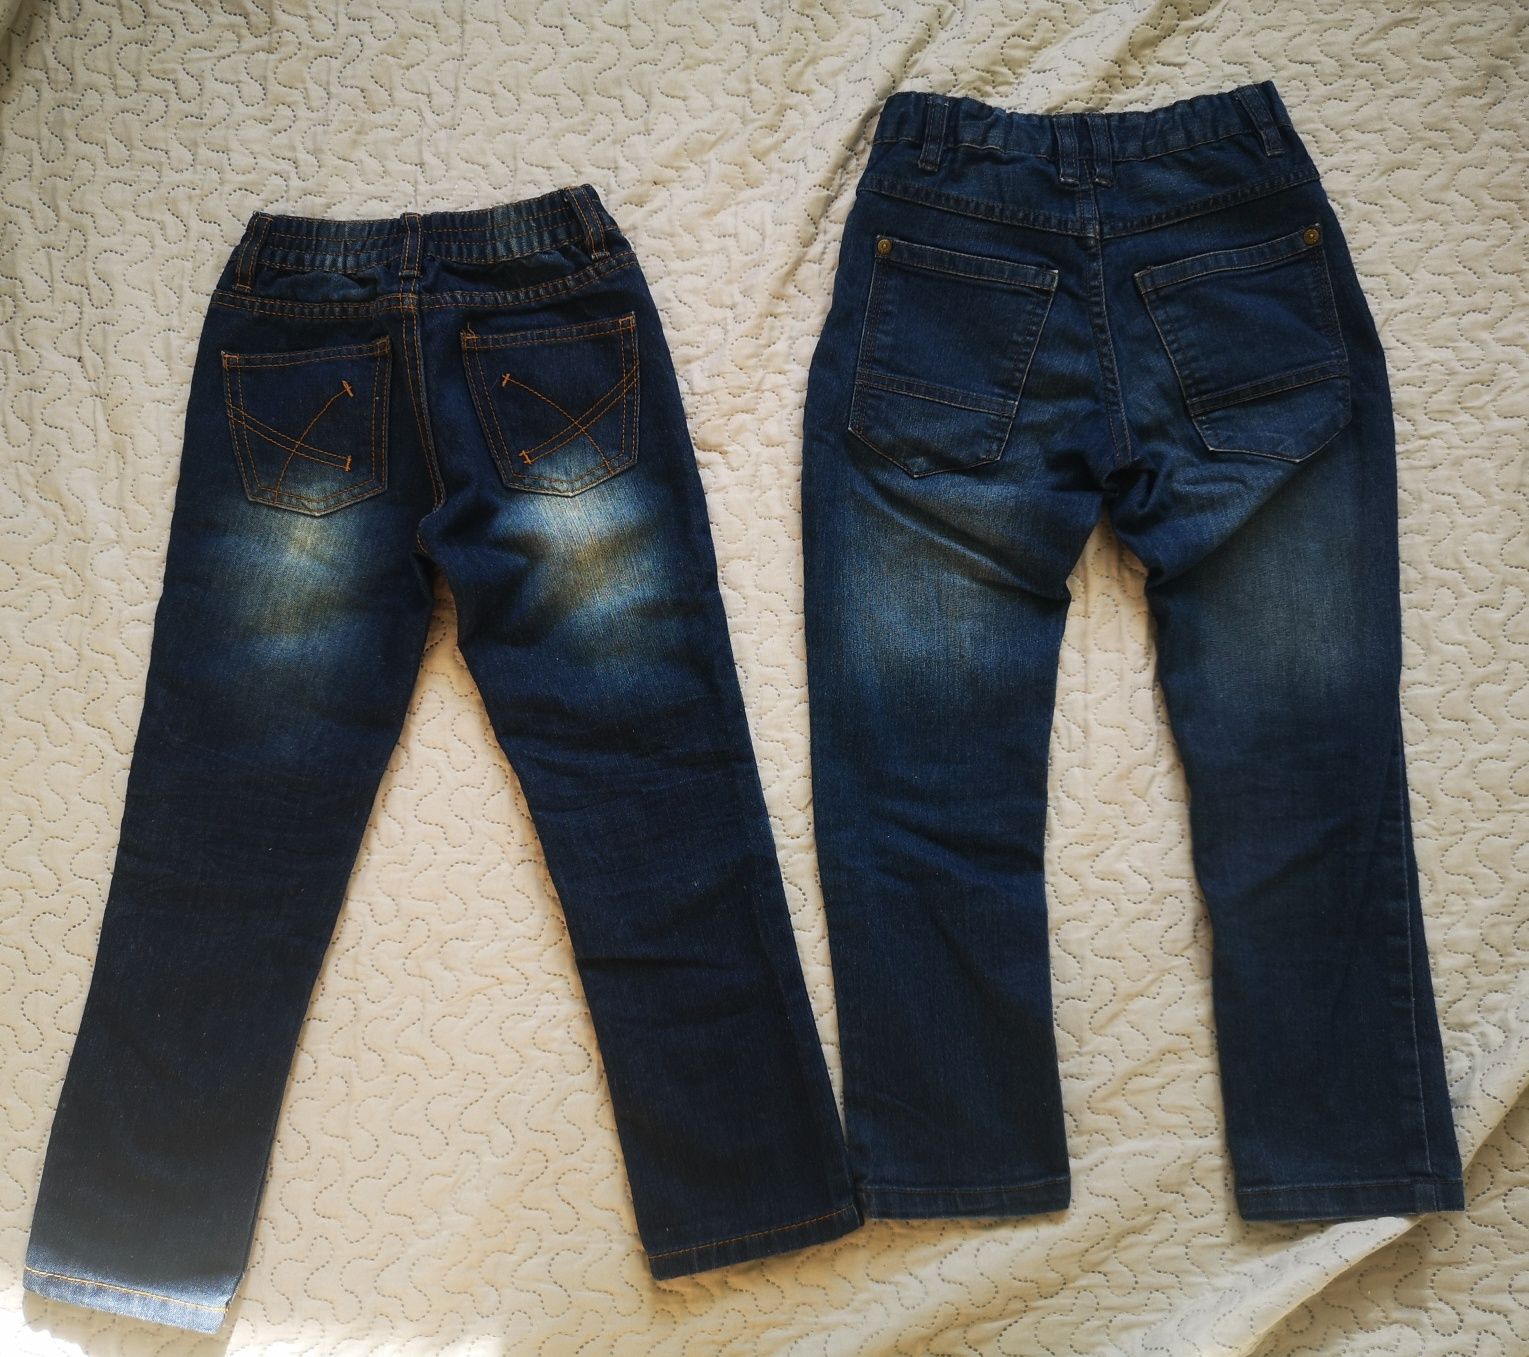 Nowe 2 pary spodni jeansowych dla chłopca w rozmiarze 122